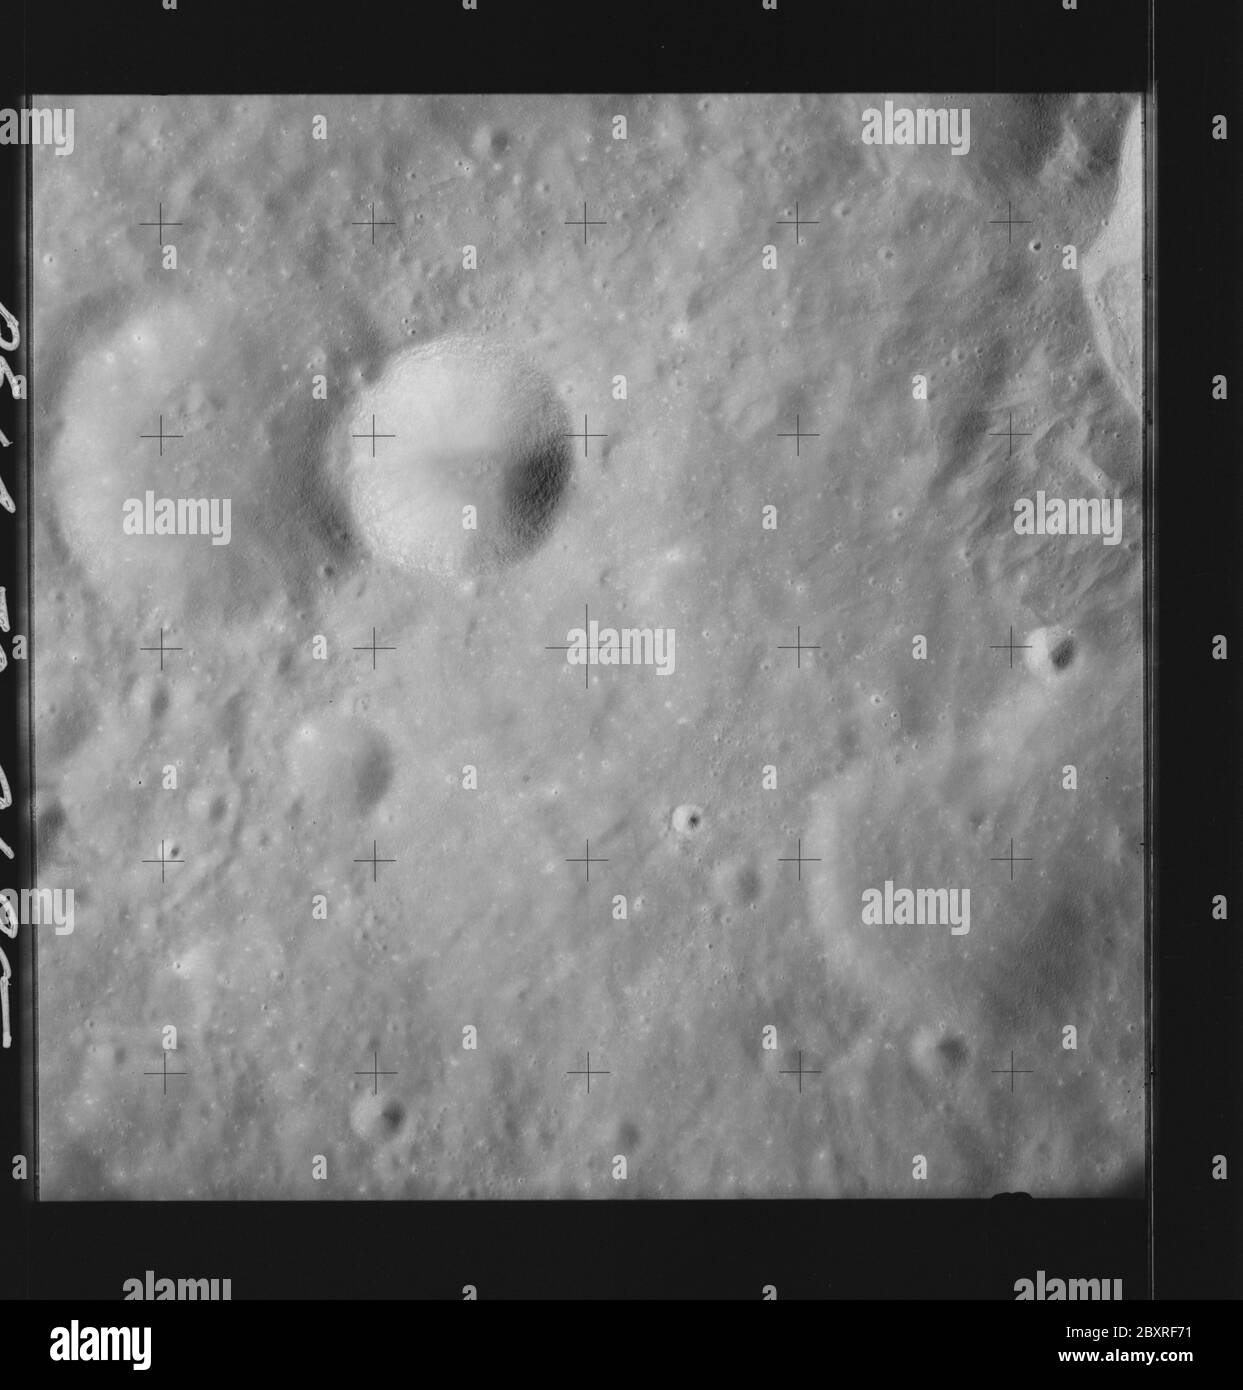 AS14-70-9685 - Apollo 14 - Apollo 14 image de la mission - vue de la surface lunaire au sud-est du cratère d'Einthoven.; portée et contenu: La base de données originale décrit ce qui suit: Description: Vue de la surface lunaire au sud-est du cratère d'Einthoven. Des images ont été prises sur la Révolution 26 de la mission Apollo 14. Le magazine original a été étiqueté Q, le type de film était 3400BW (Panatomic-X, noir et blanc), objectif de 80 mm avec une élévation du soleil de 30 degrés. L'échelle de photo approximative était de 1:1,380,000. La principale point de latence était 7.5S par Longitude 111.0E,avec une inclinaison verticale de la caméra. Descripteurs : Apollo 14 en bateau Banque D'Images